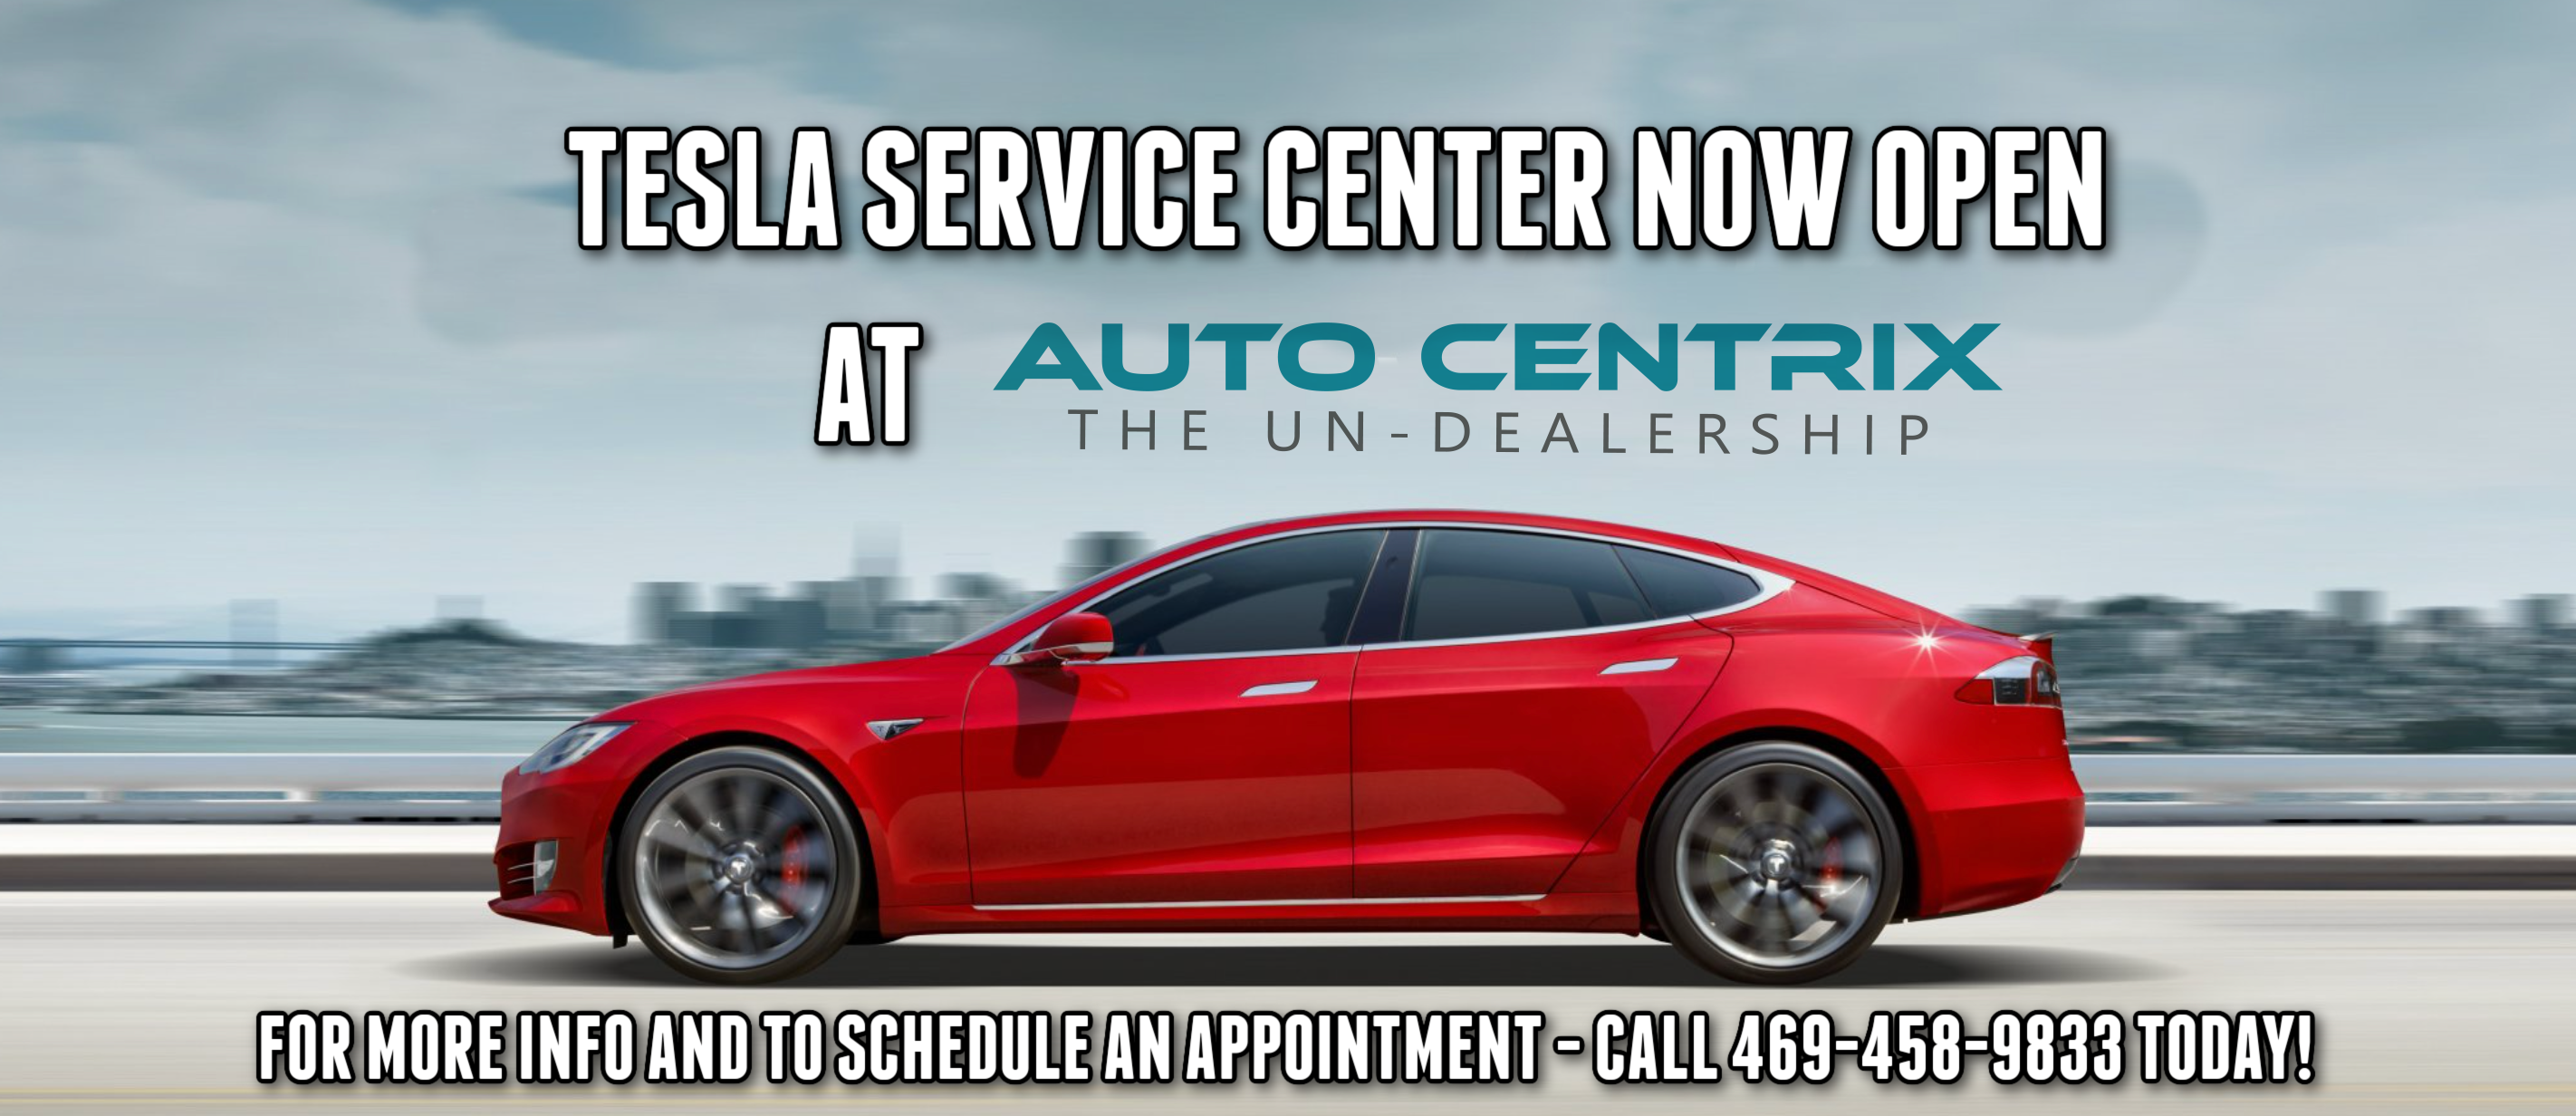 Auto Centrix Tesla Service Center